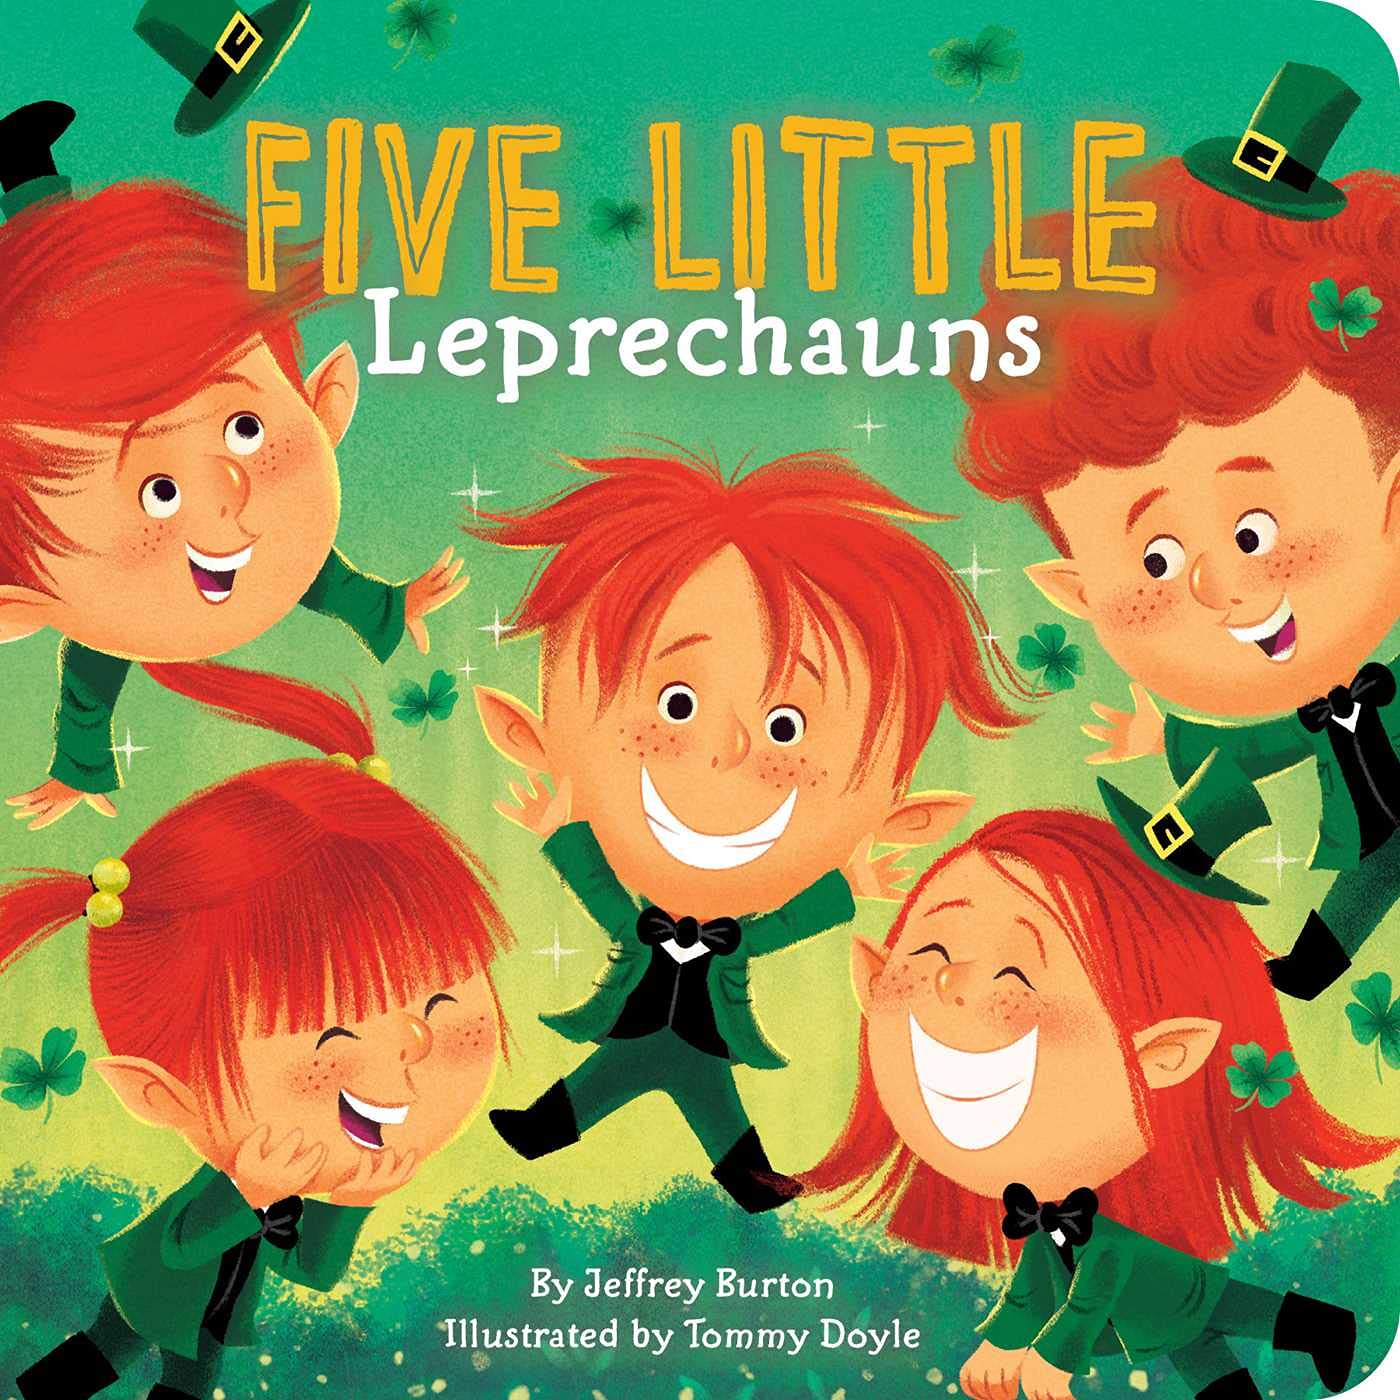 Image for "Five Little Leprechauns"